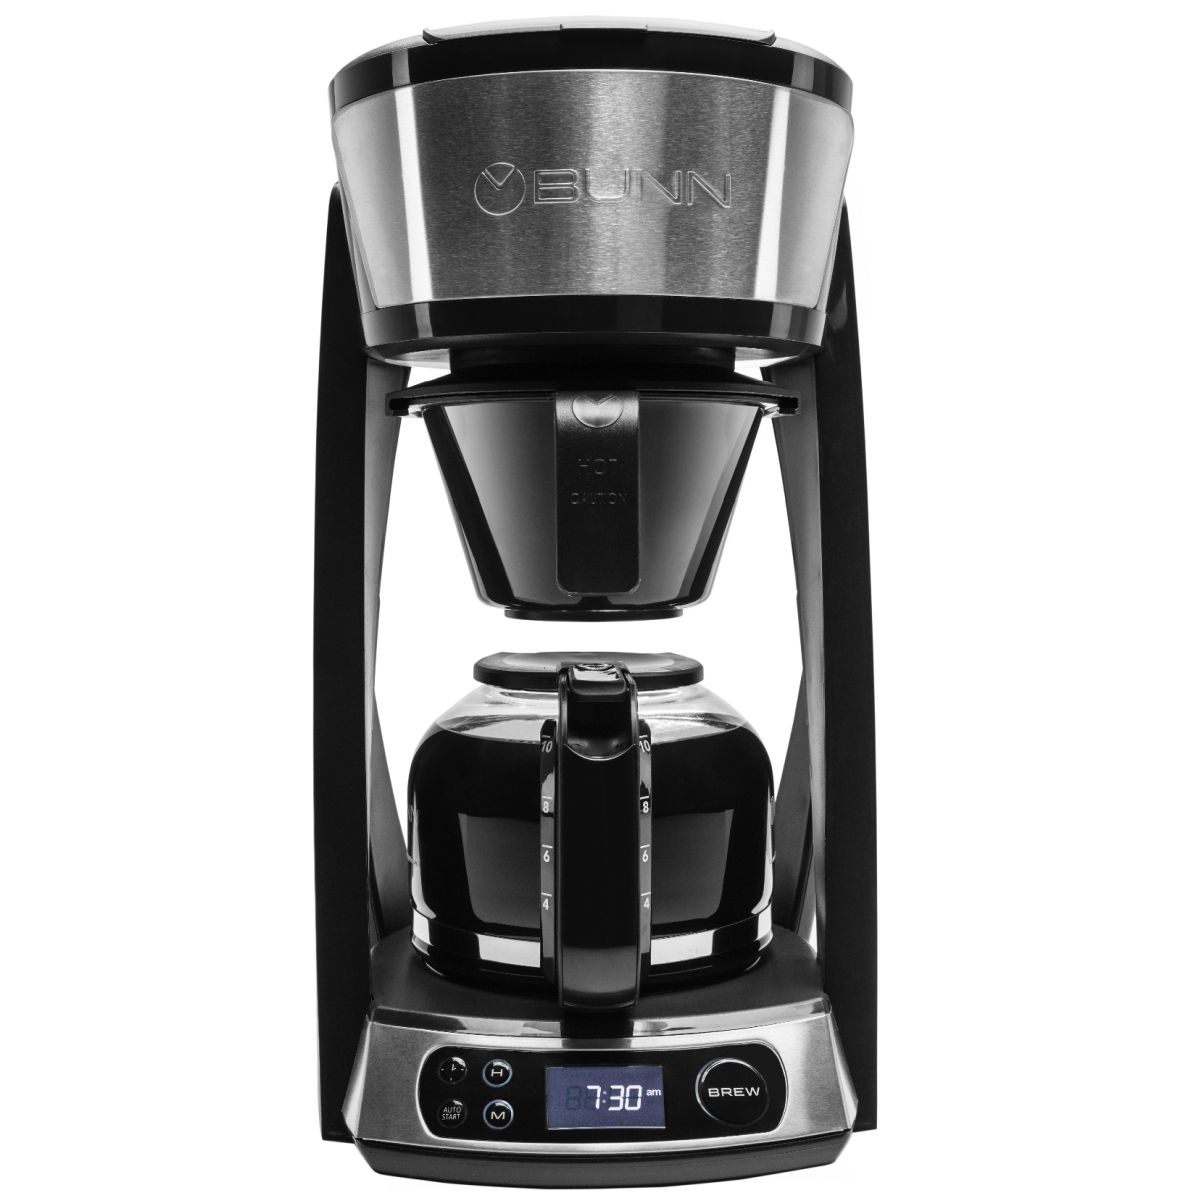 BUNN HB Heat N' Brew 10-Cup Programmable Coffee Maker 46500.0003